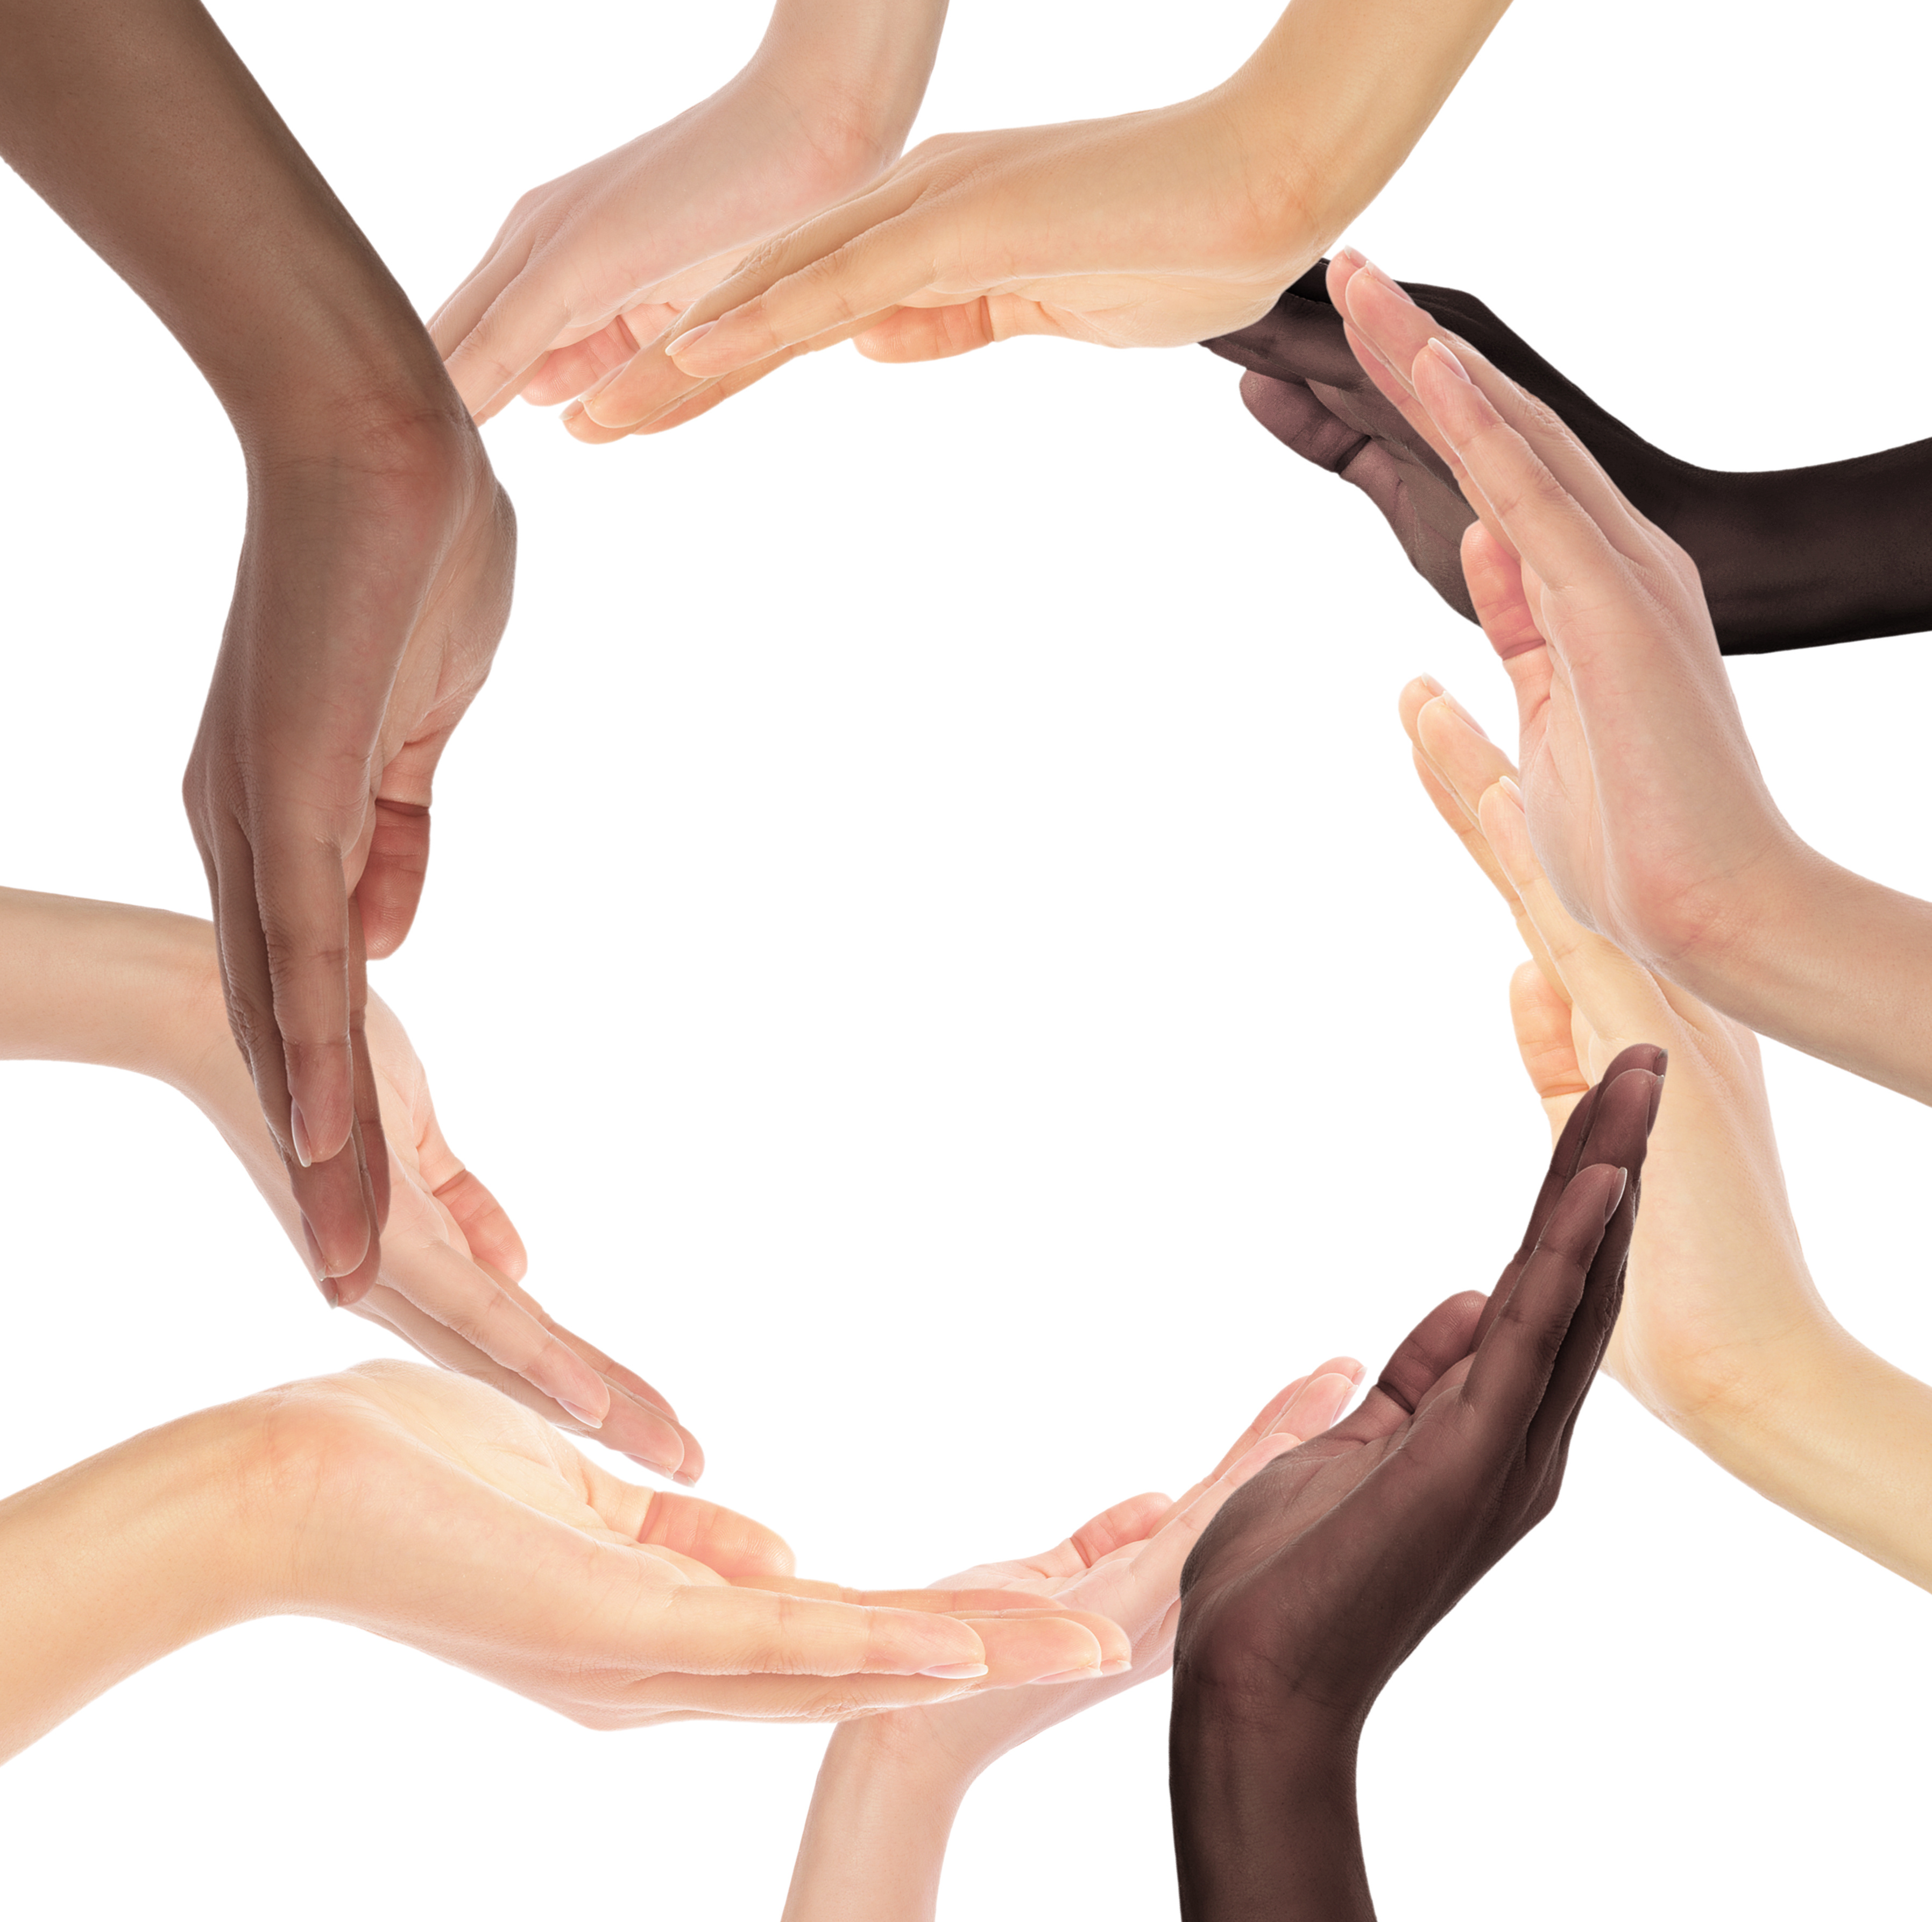 Multiracial Hands Making a Circle